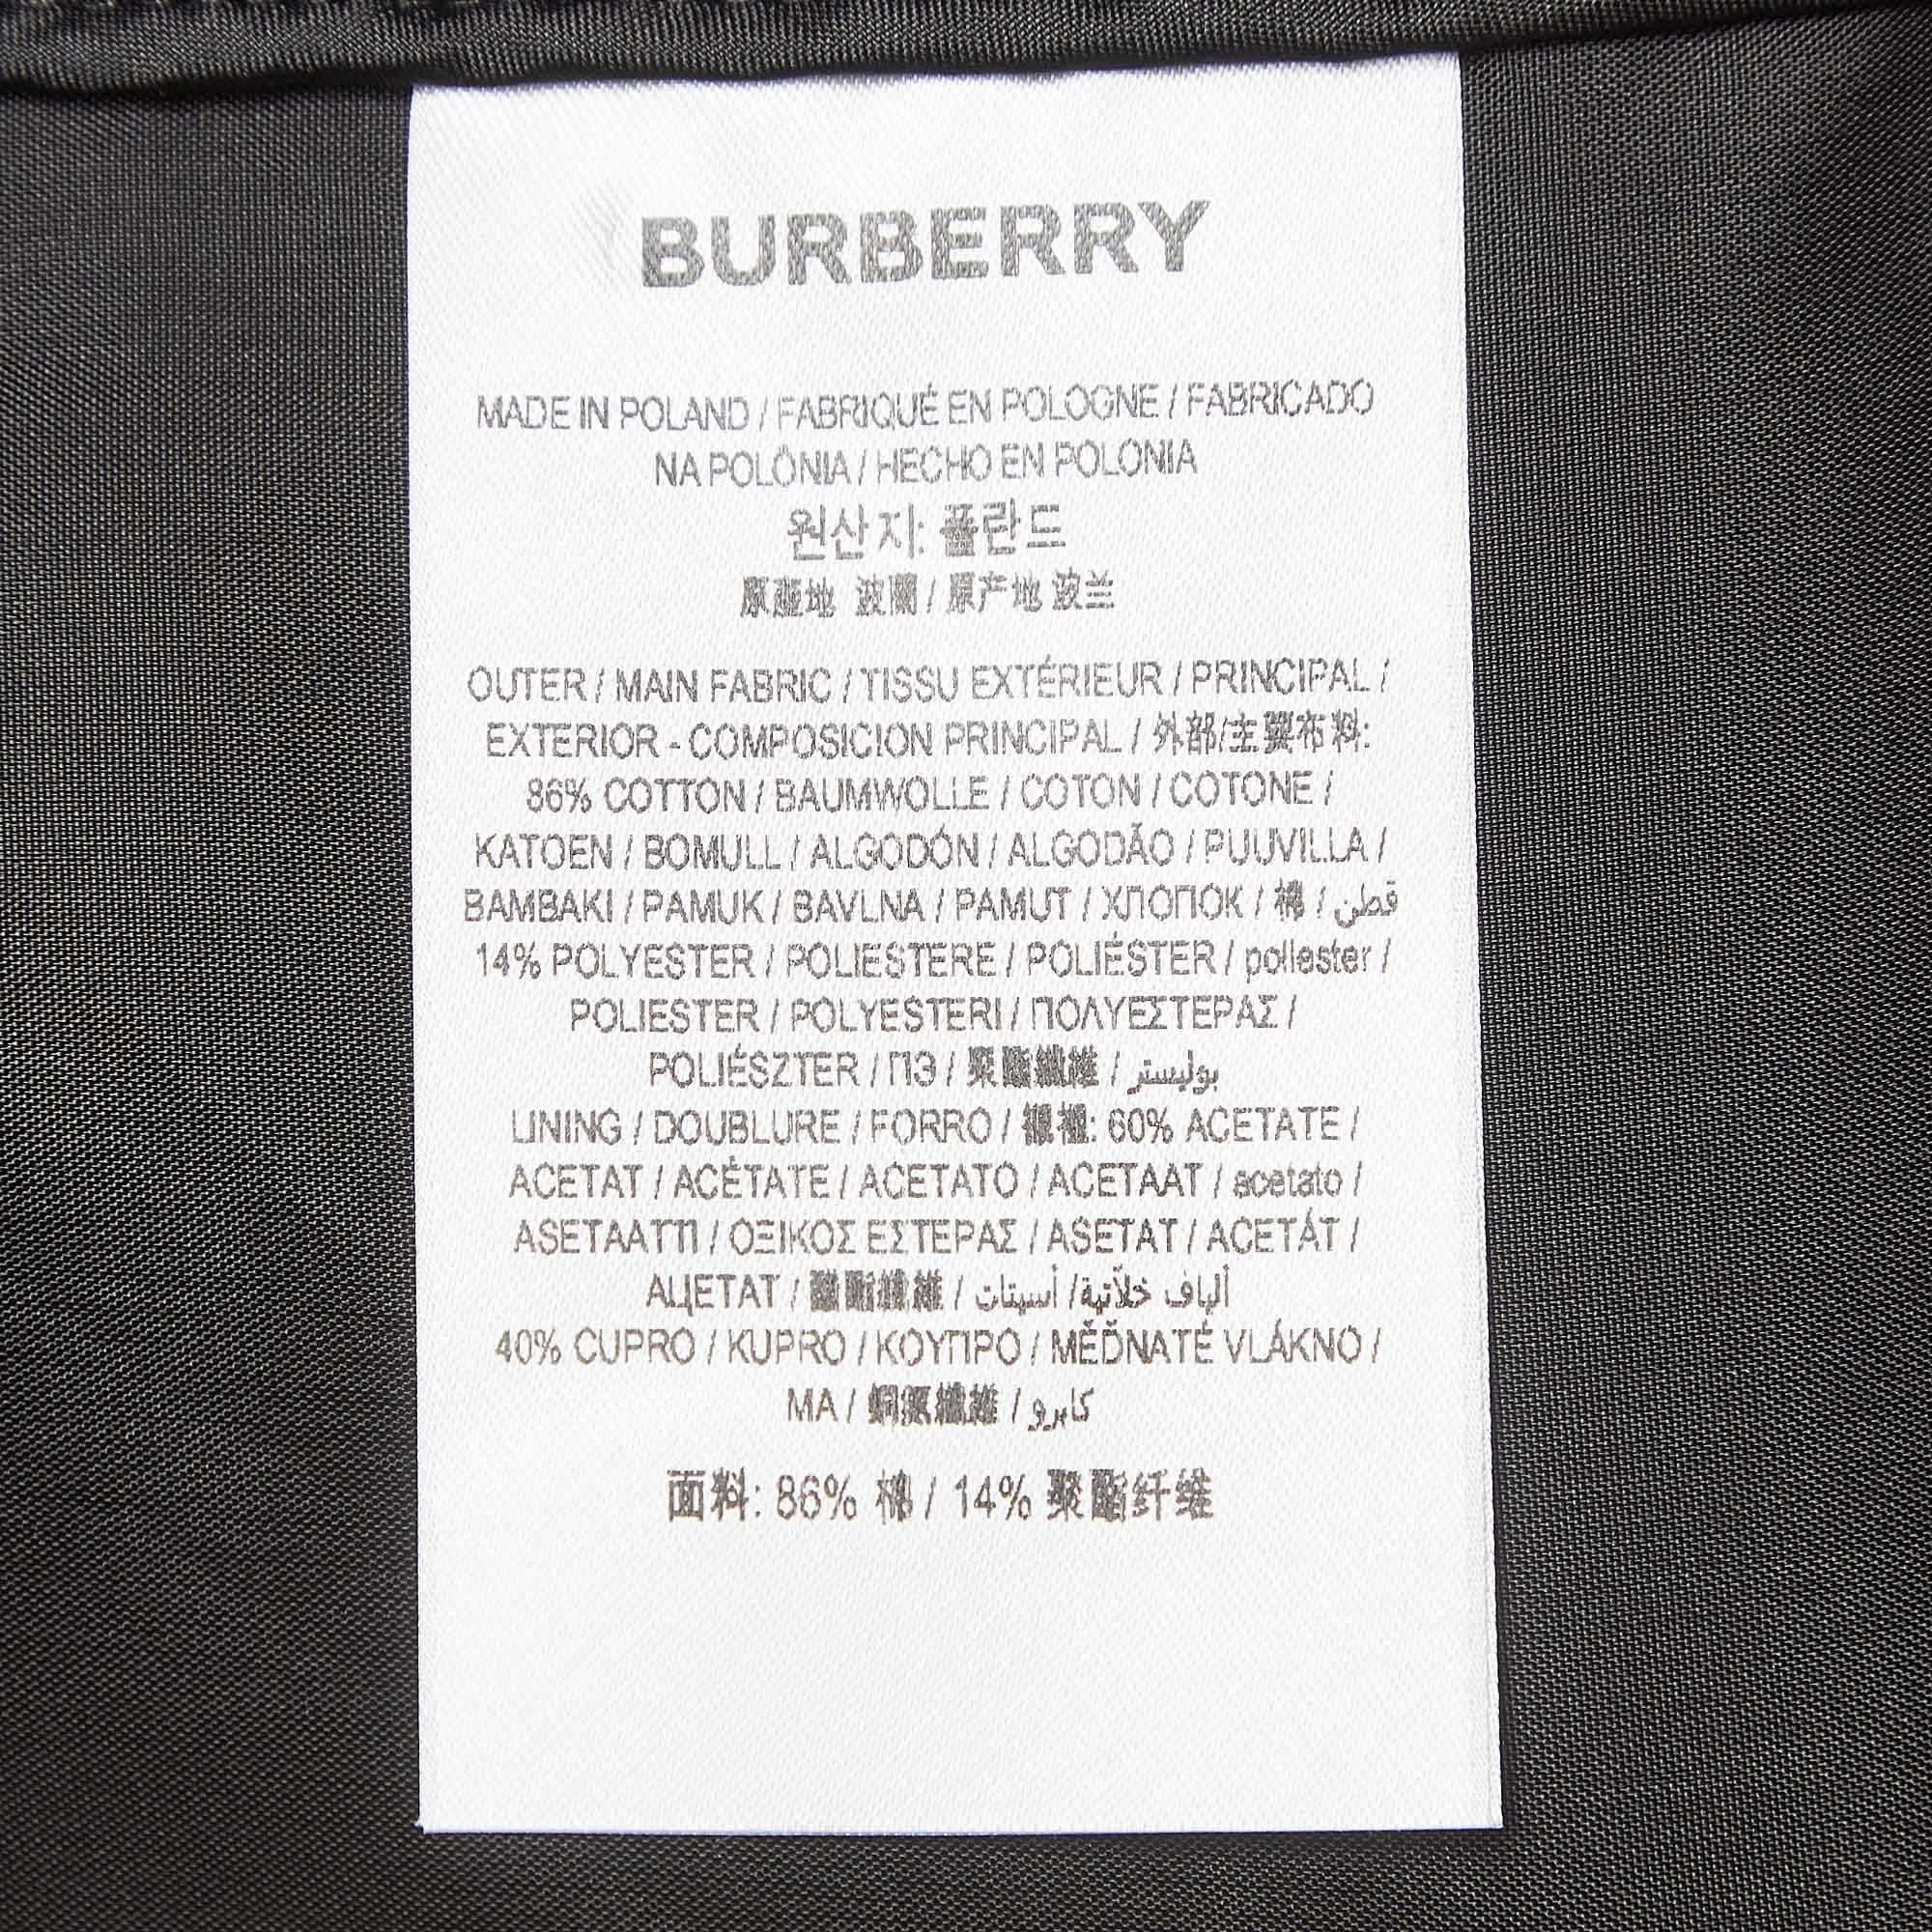 Burberry Black Lace Pencil Midi Skirt S In Excellent Condition For Sale In Dubai, Al Qouz 2